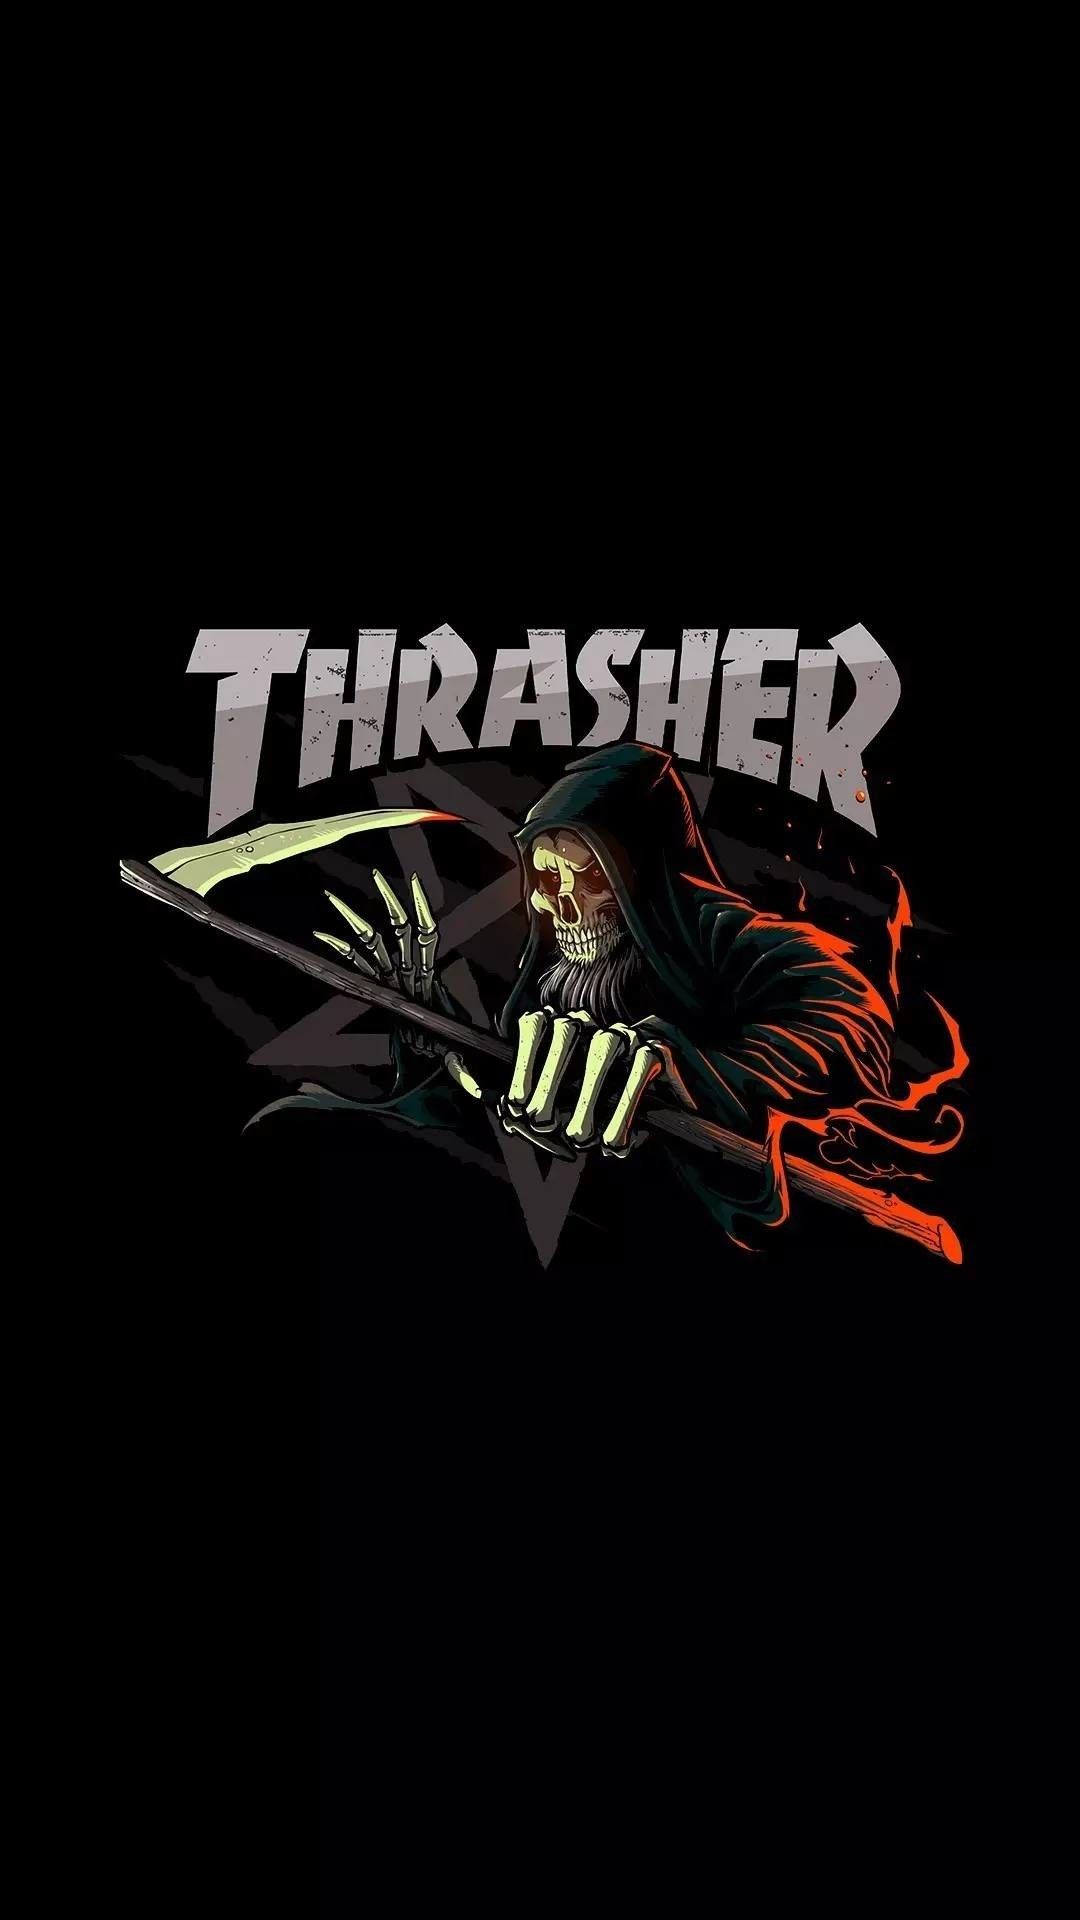 Thrasher Wallpapers - Mejores fondos de pantalla de Thrasher gratis - WallpaperAccess